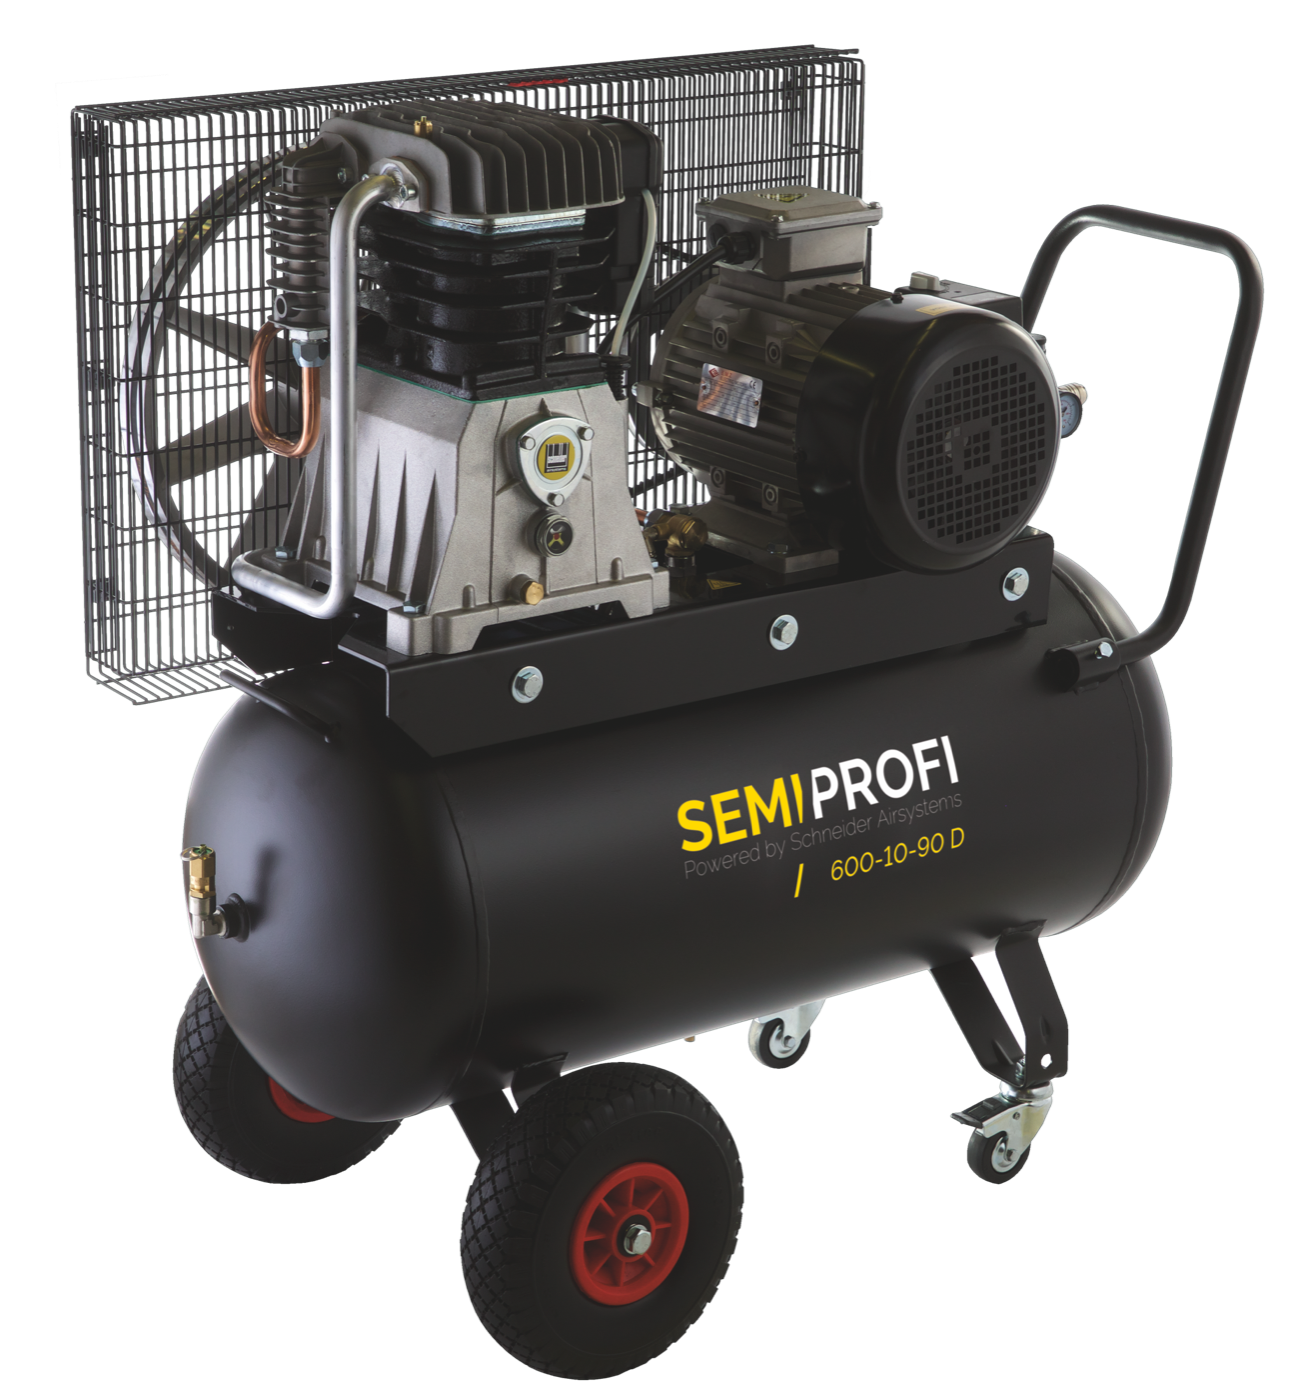 Schneider kompresor SEMI PROFI 600-10-90 D   1121550238 - Kompresory a príslušenstvo | MasMasaryk